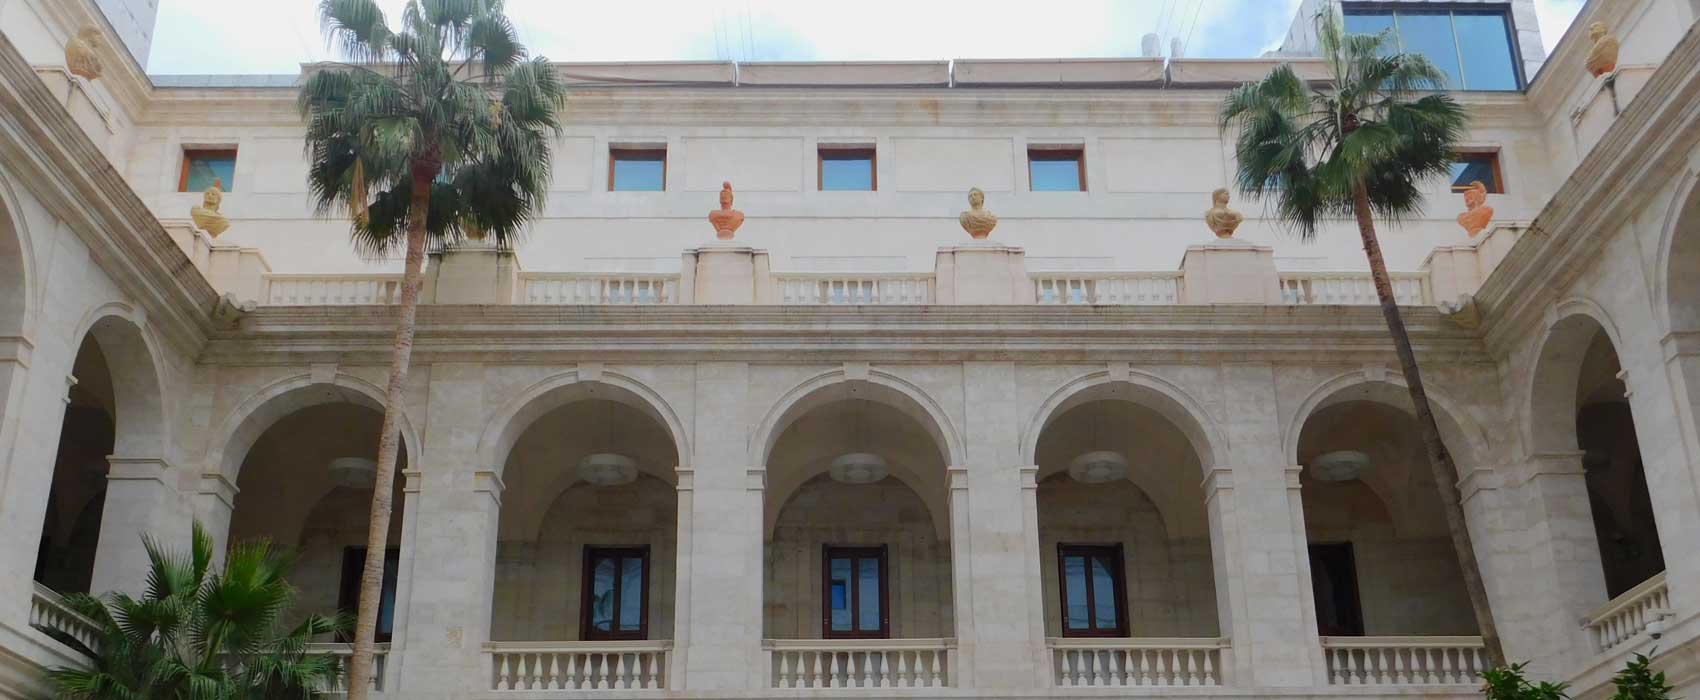 Das Stadtmuseum von Malaga